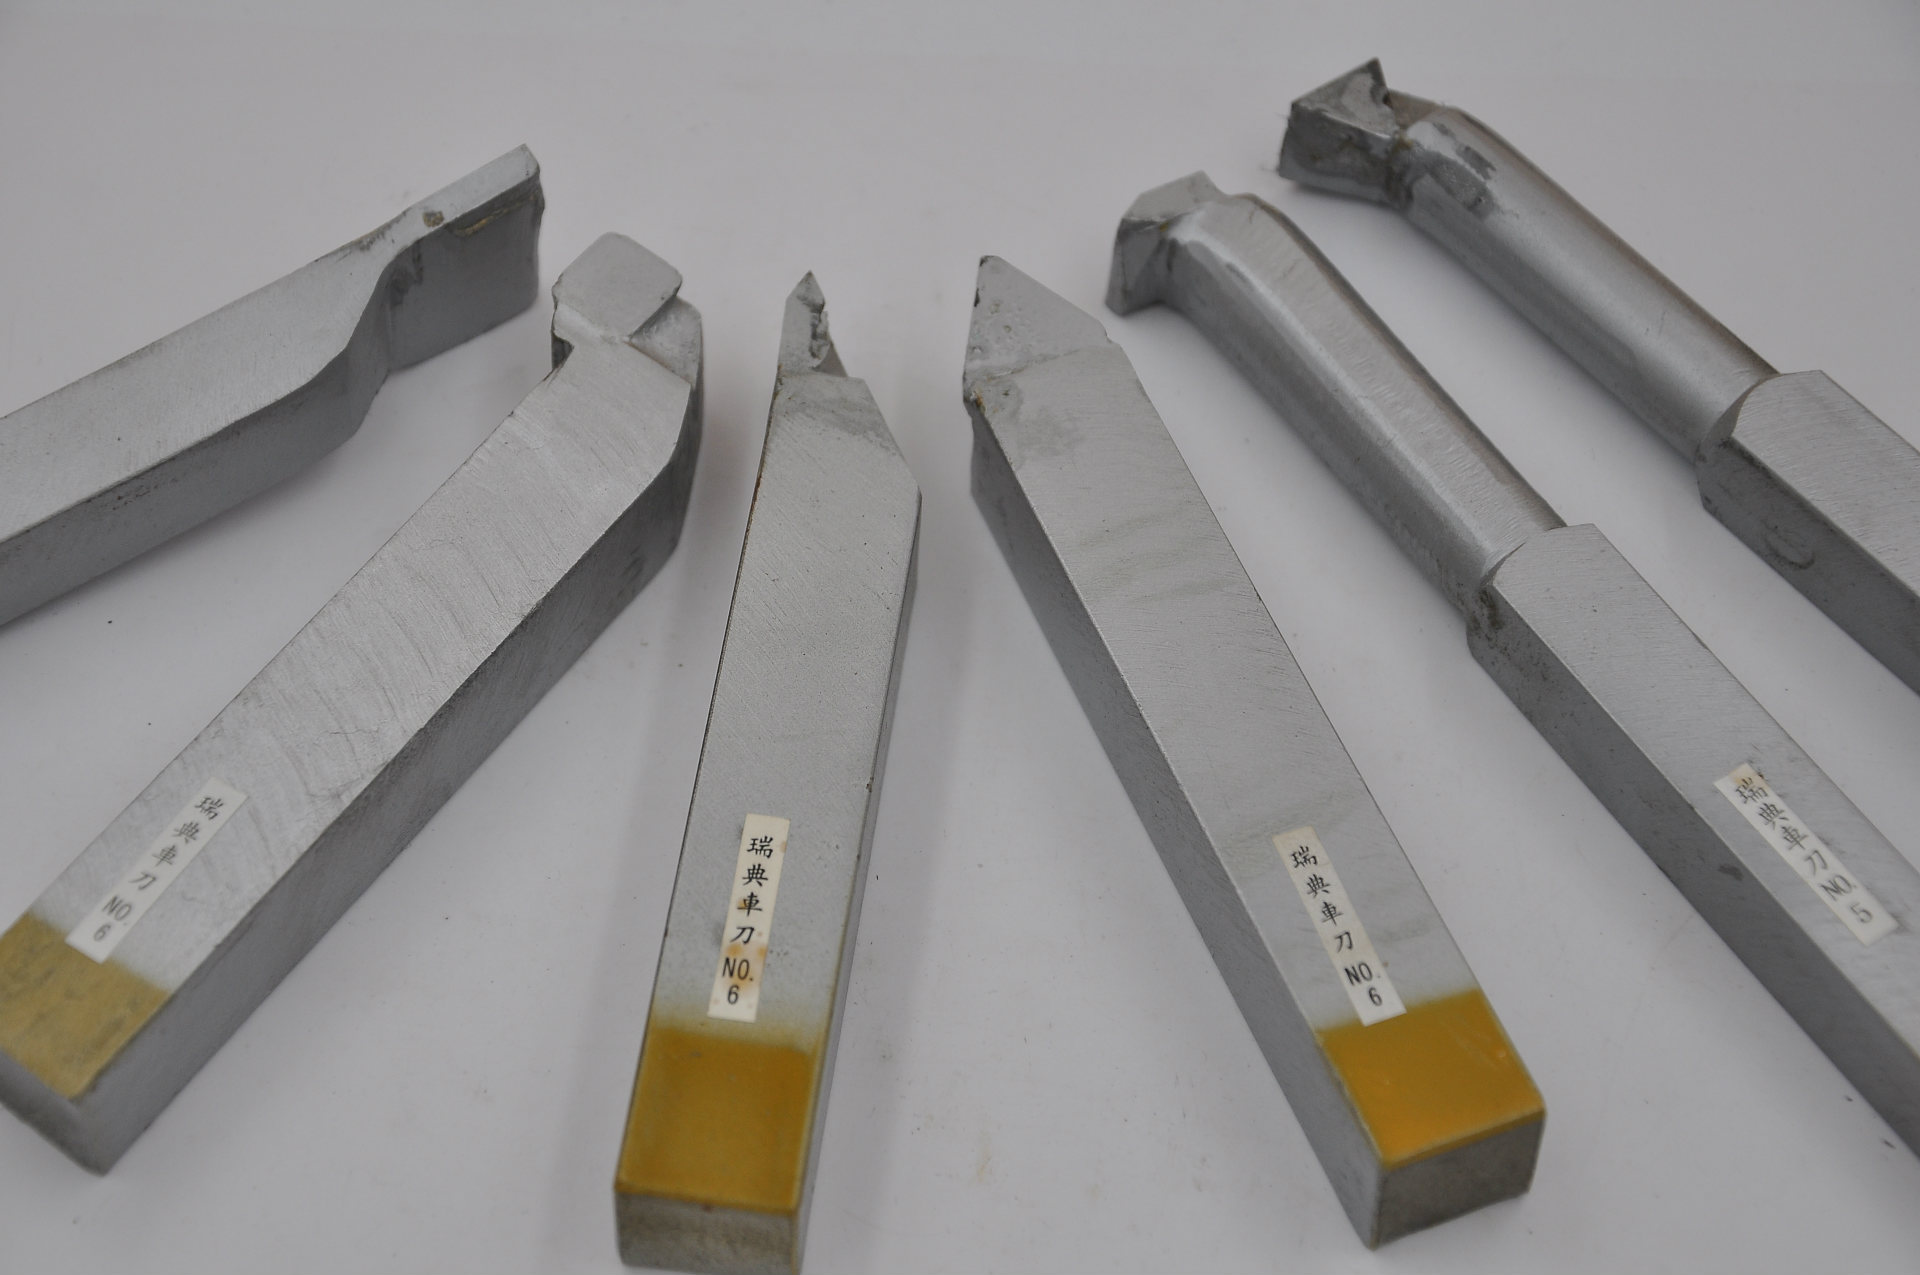 正品优质瑞典车刀 硬质合金车刀 不锈钢专用车刀 厂价直推